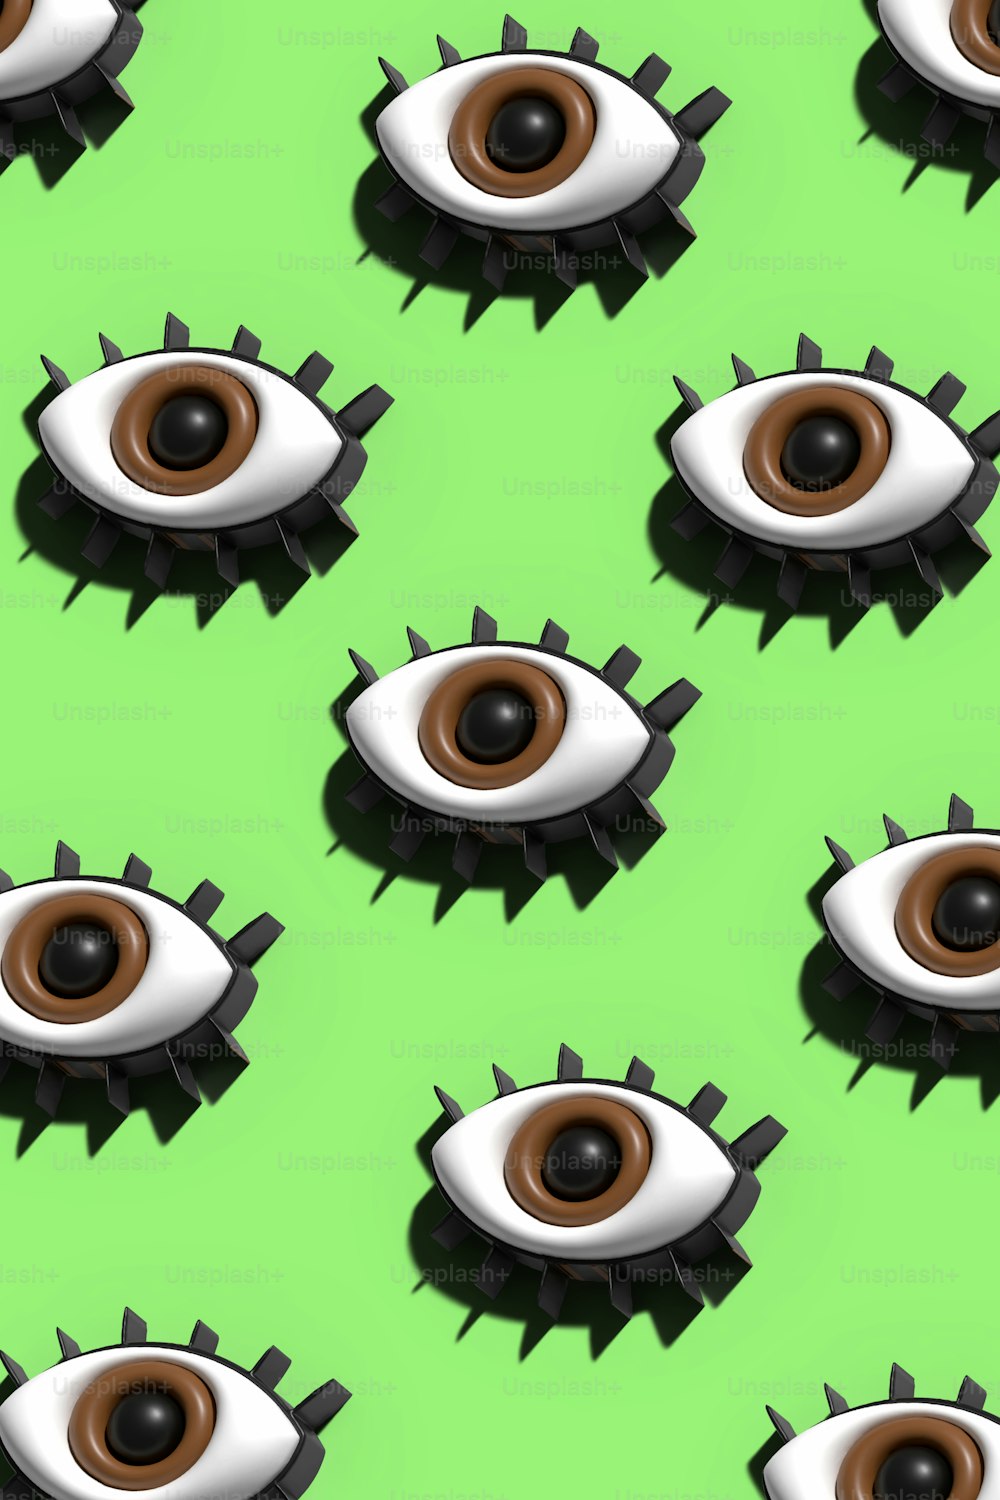 緑の背景にたくさんの偽の眼球